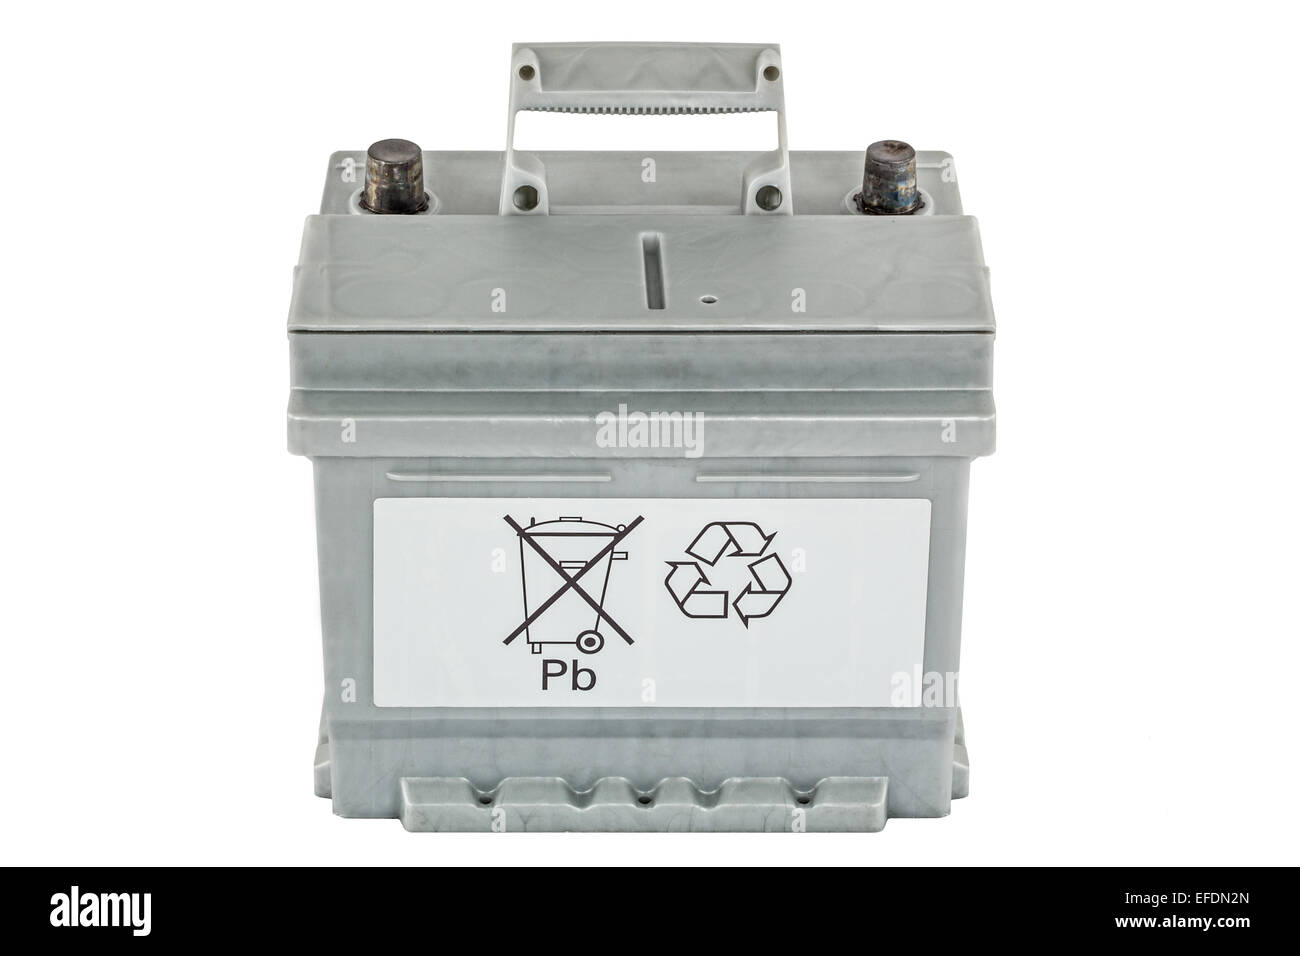 L'appel symbolique pour la protection de l'environnement par le recyclage de batteries acide-plomb, isolé sur fond blanc Banque D'Images